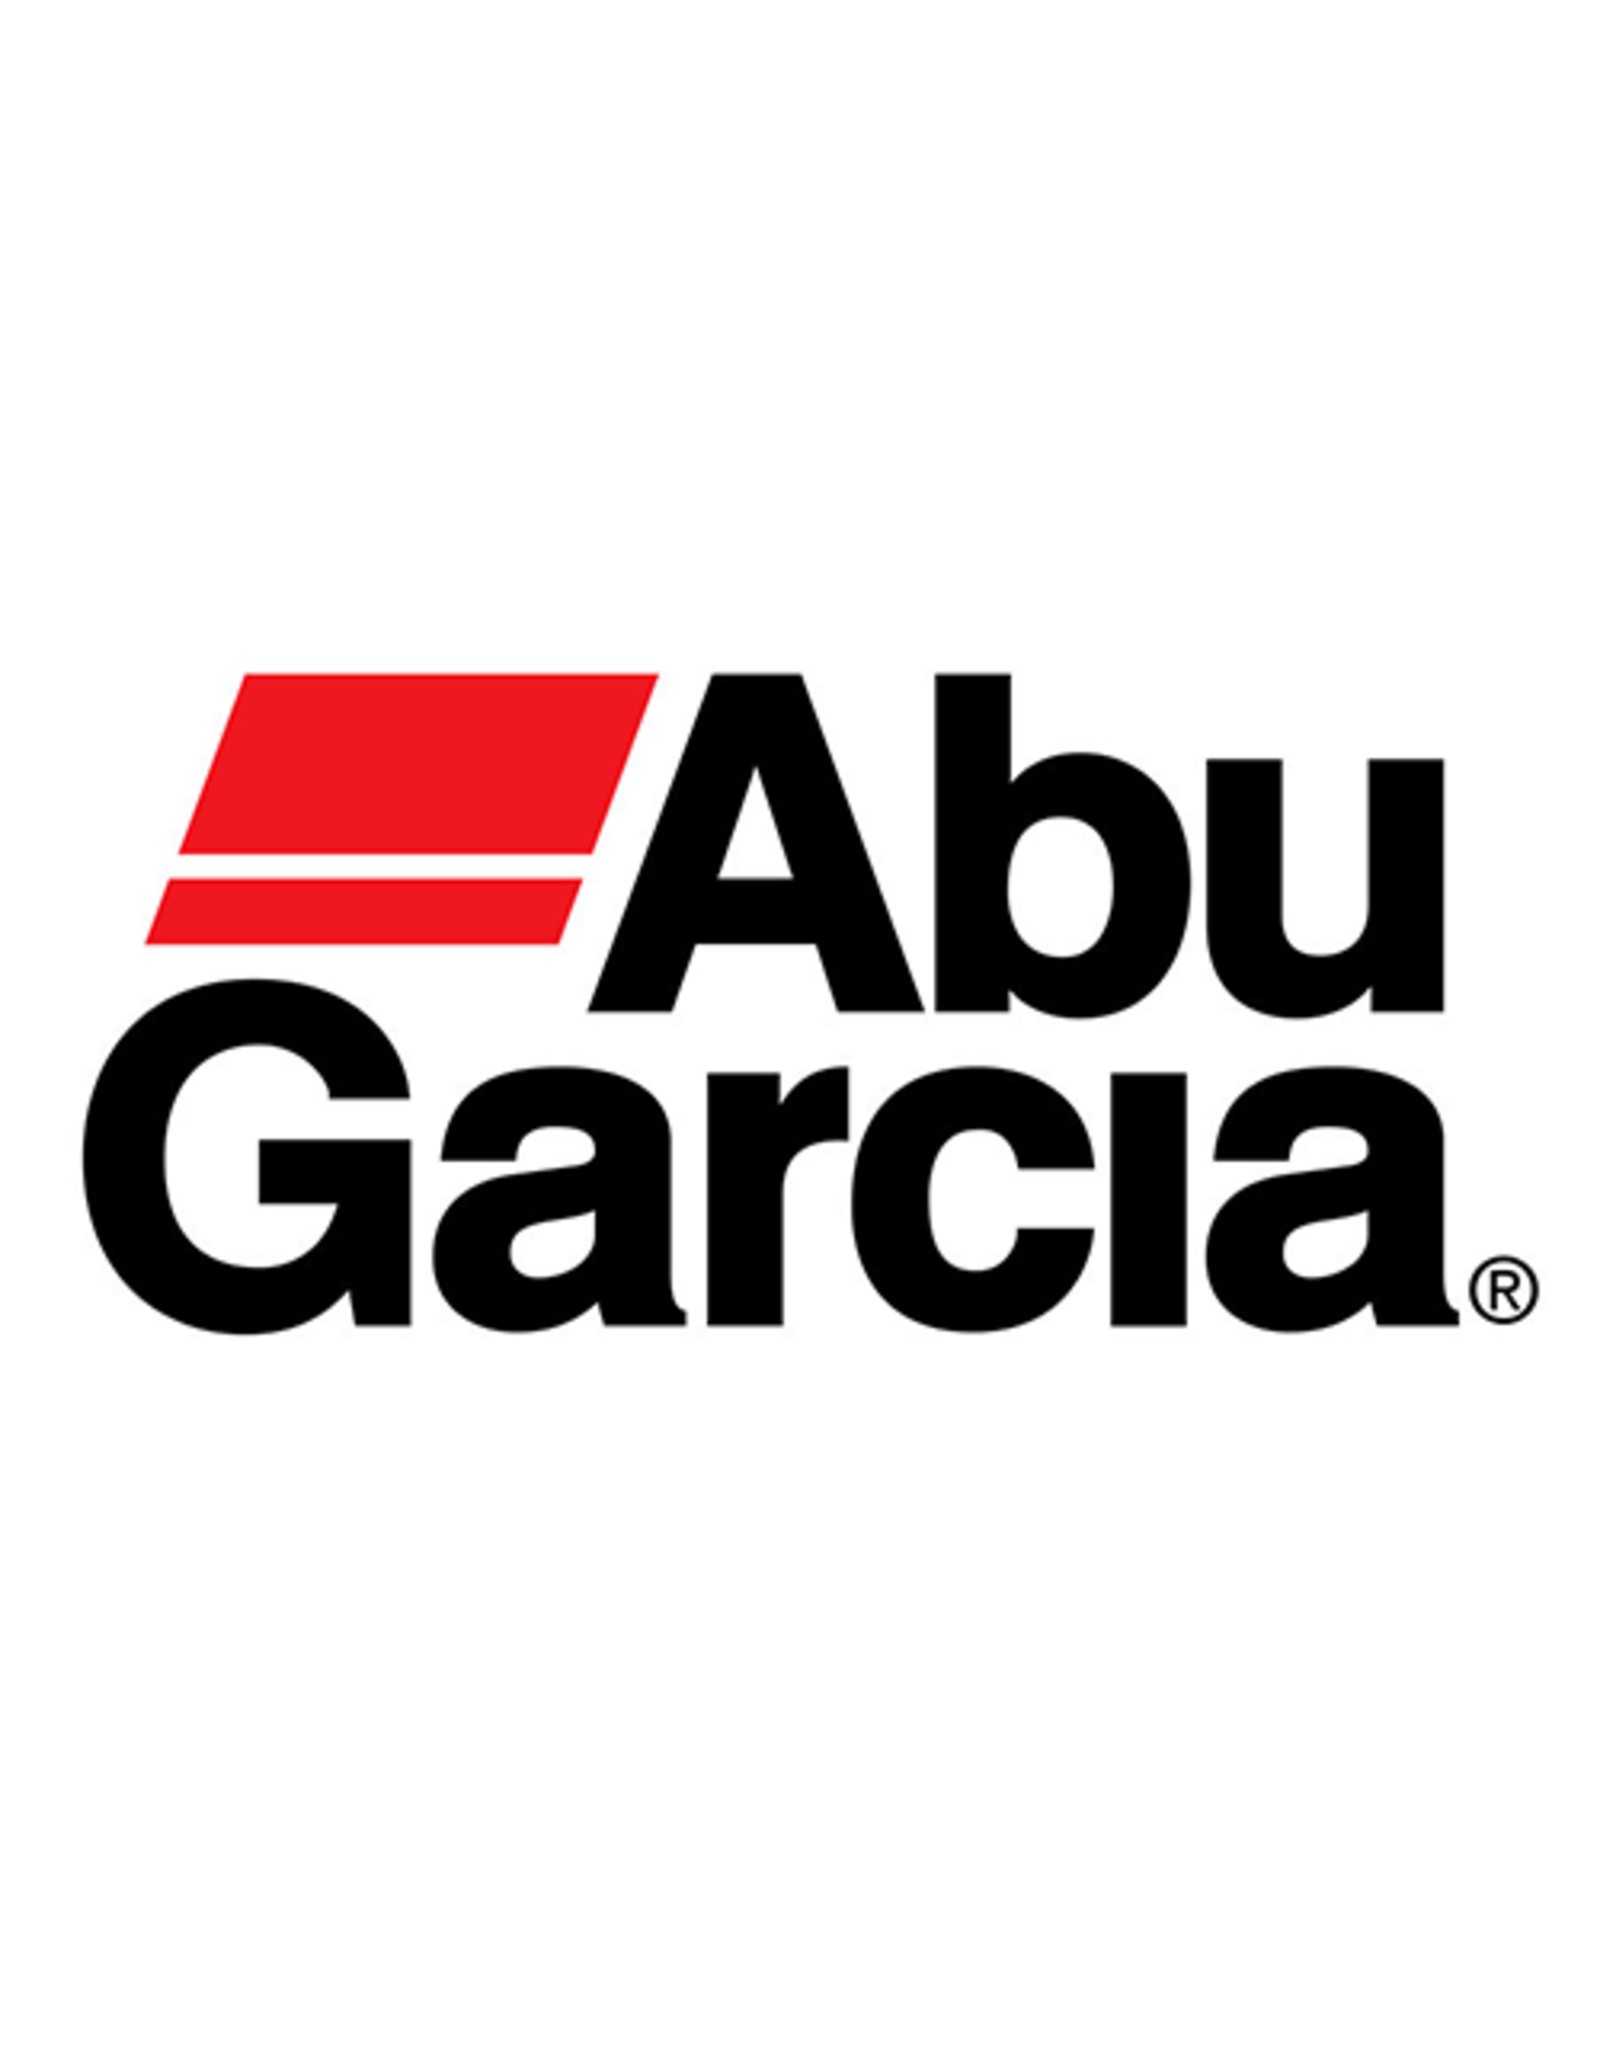 Abu Garcia 811640  FRAME